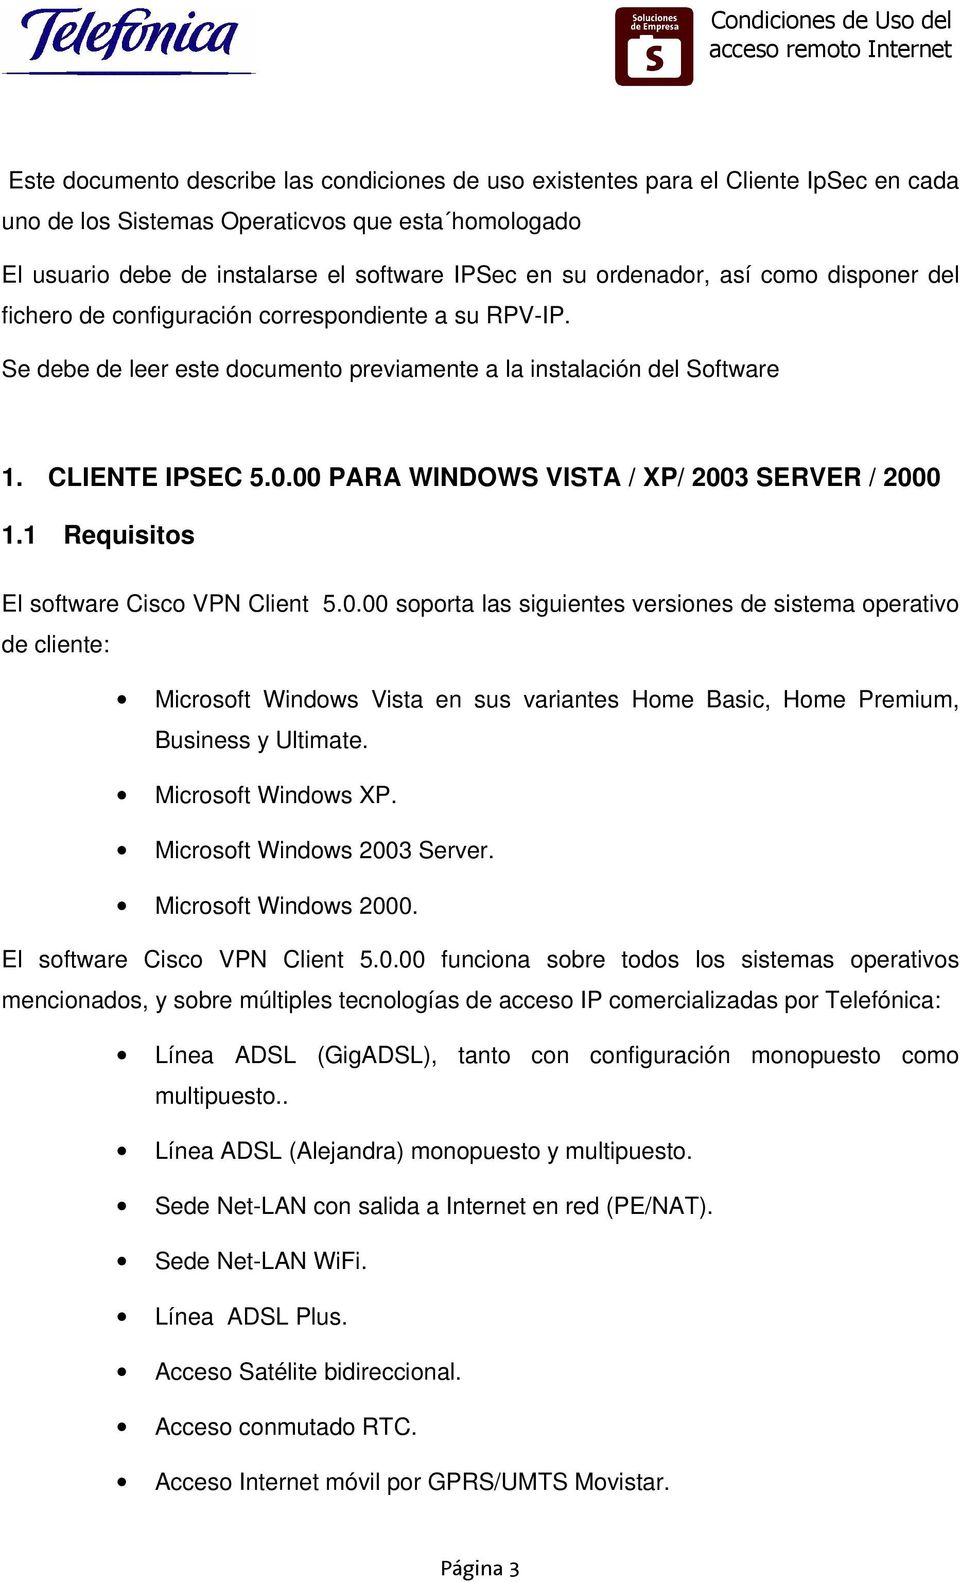 00 PARA WINDOWS VISTA / XP/ 2003 SERVER / 2000 1.1 Requisitos El software Cisco VPN Client 5.0.00 soporta las siguientes versiones de sistema operativo de cliente: Microsoft Windows Vista en sus variantes Home Basic, Home Premium, Business y Ultimate.